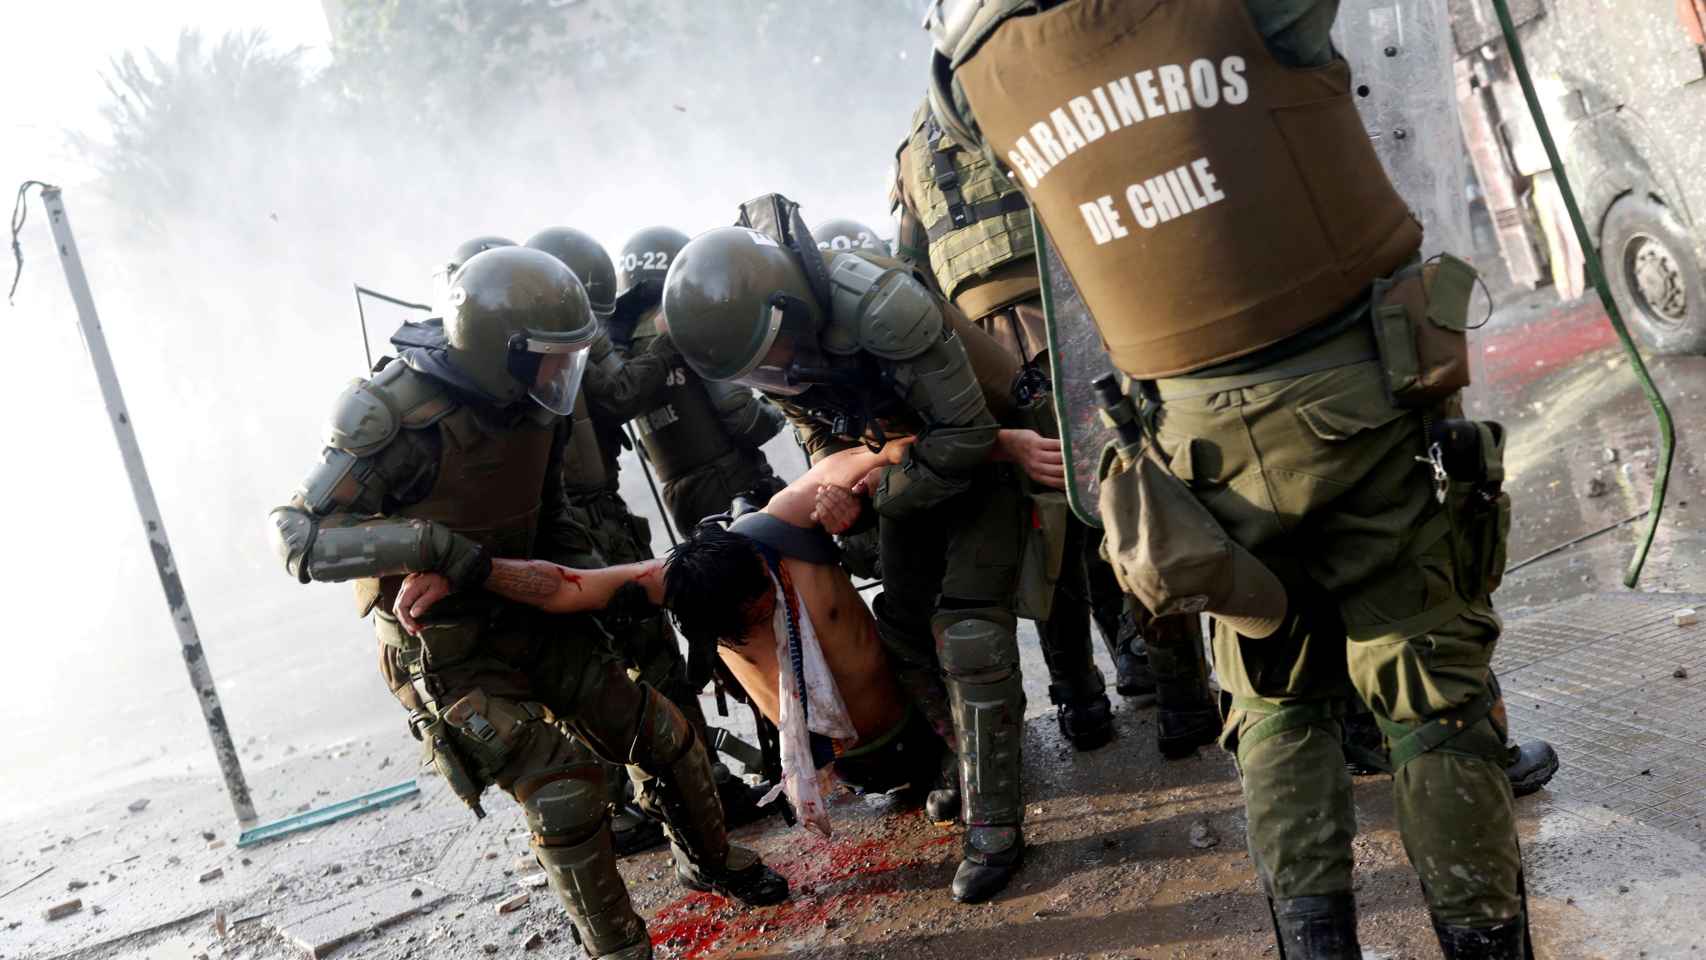 Un manifestante herido cargado por carabineros durante las protestas contra el gobierno chileno en Santiago, Chile.